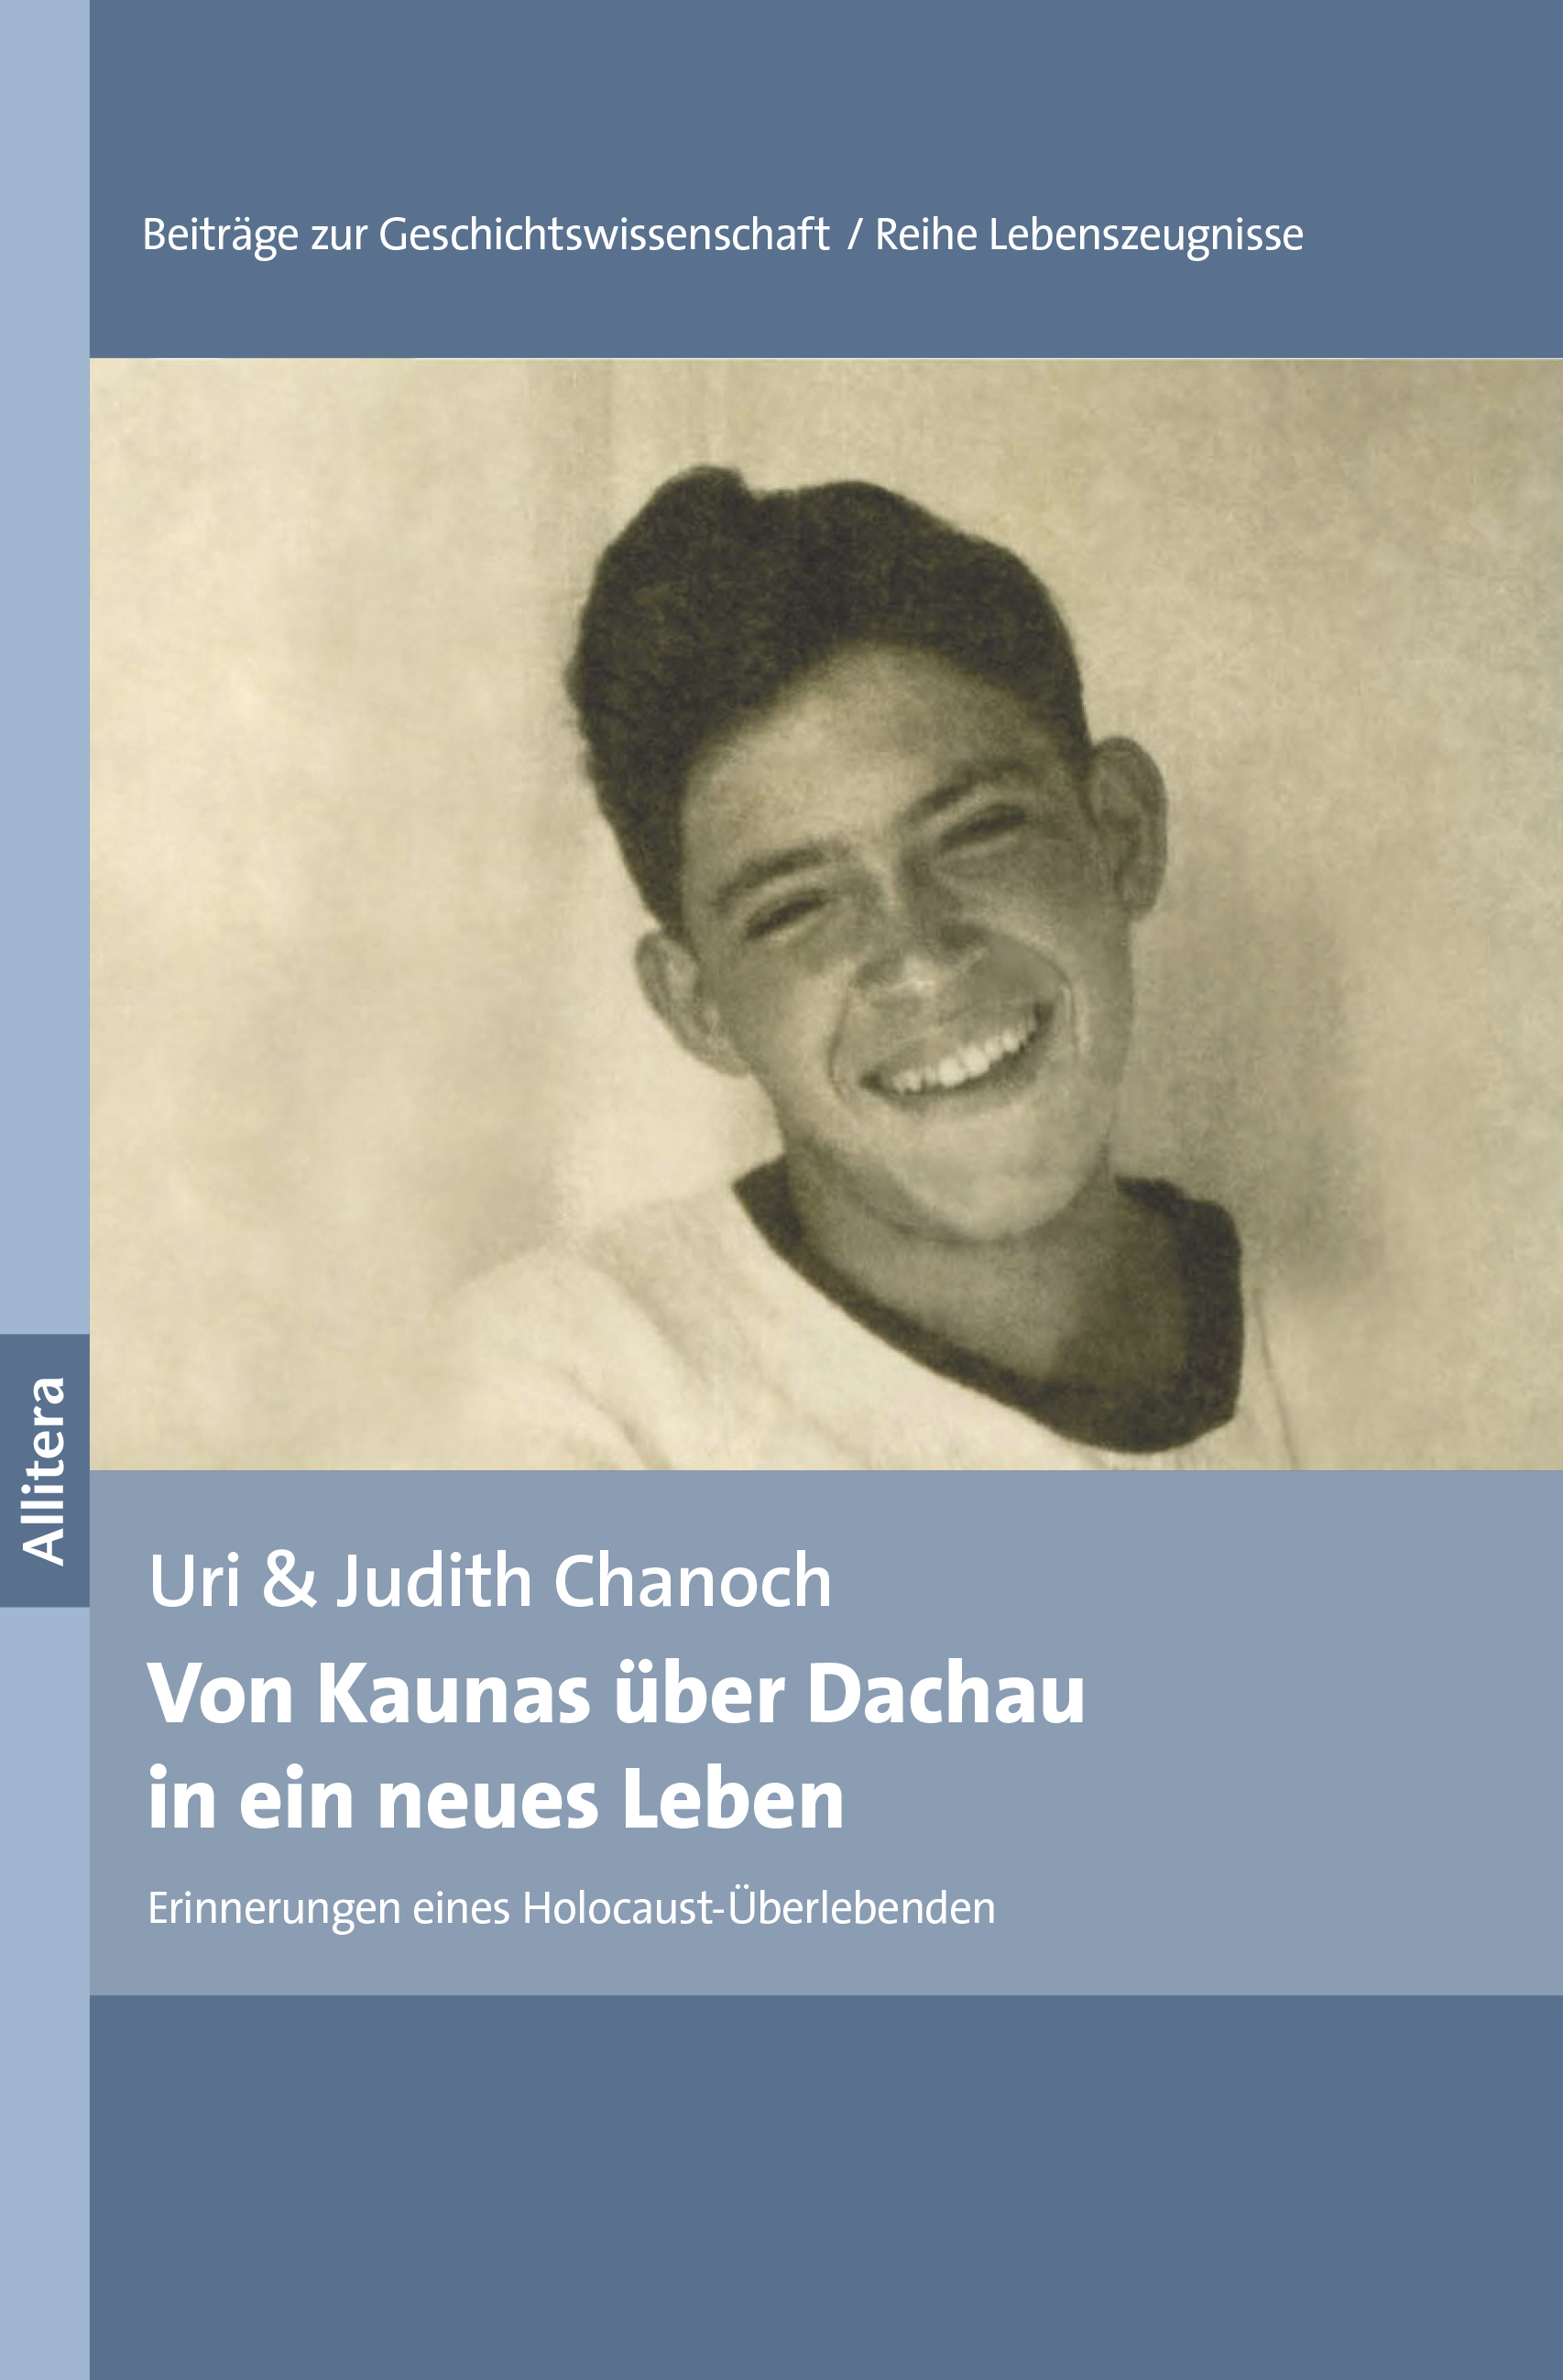 Uri Chanoch